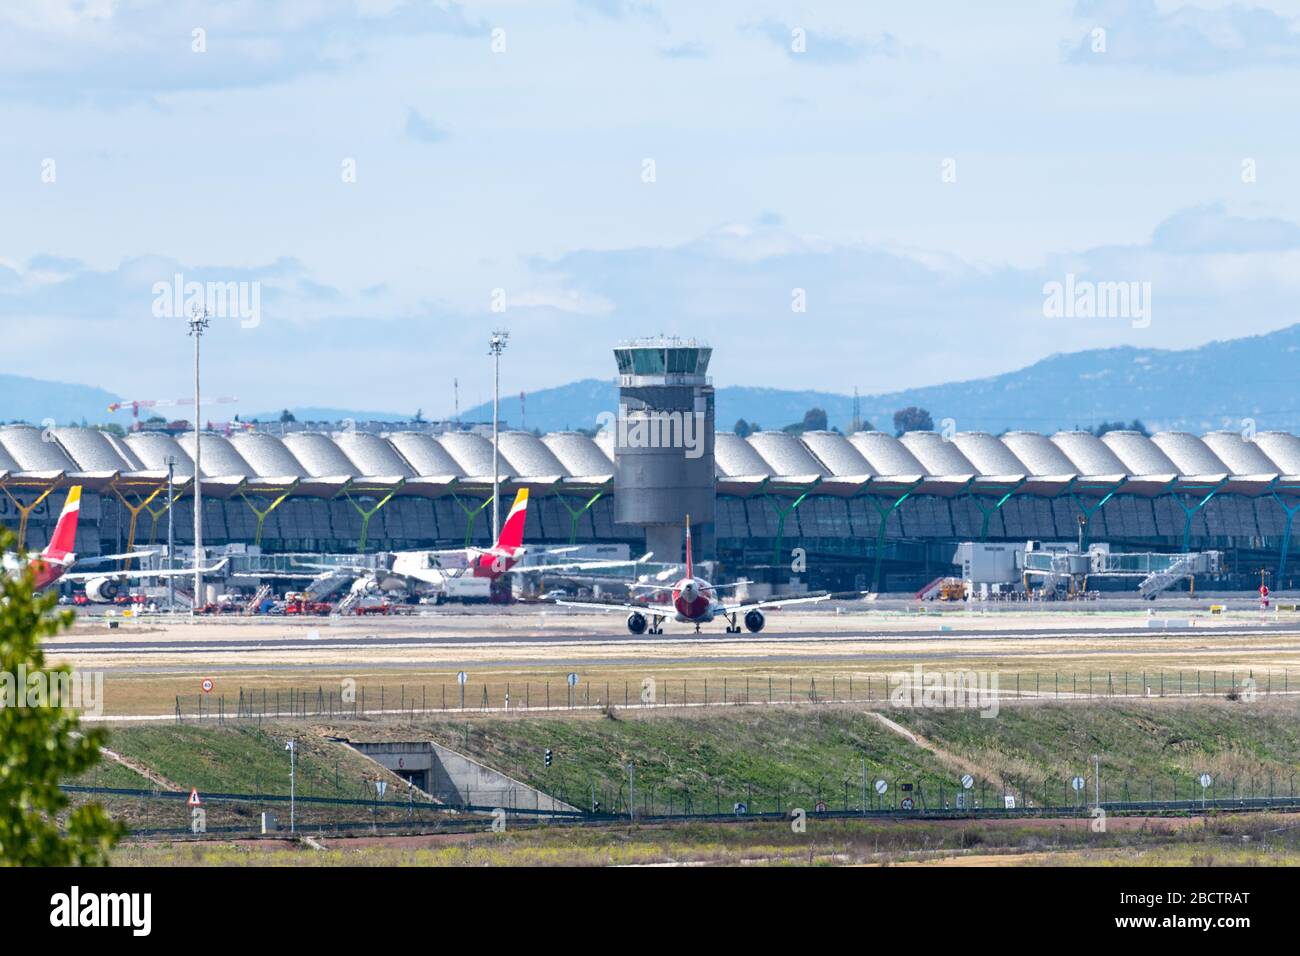 MADRID, SPAGNA - 14 APRILE 2019: L'aereo Iberia Airlines Airbus A320 atterra all'aeroporto internazionale di Madrid-Barajas Adolfo Suarez. Foto Stock